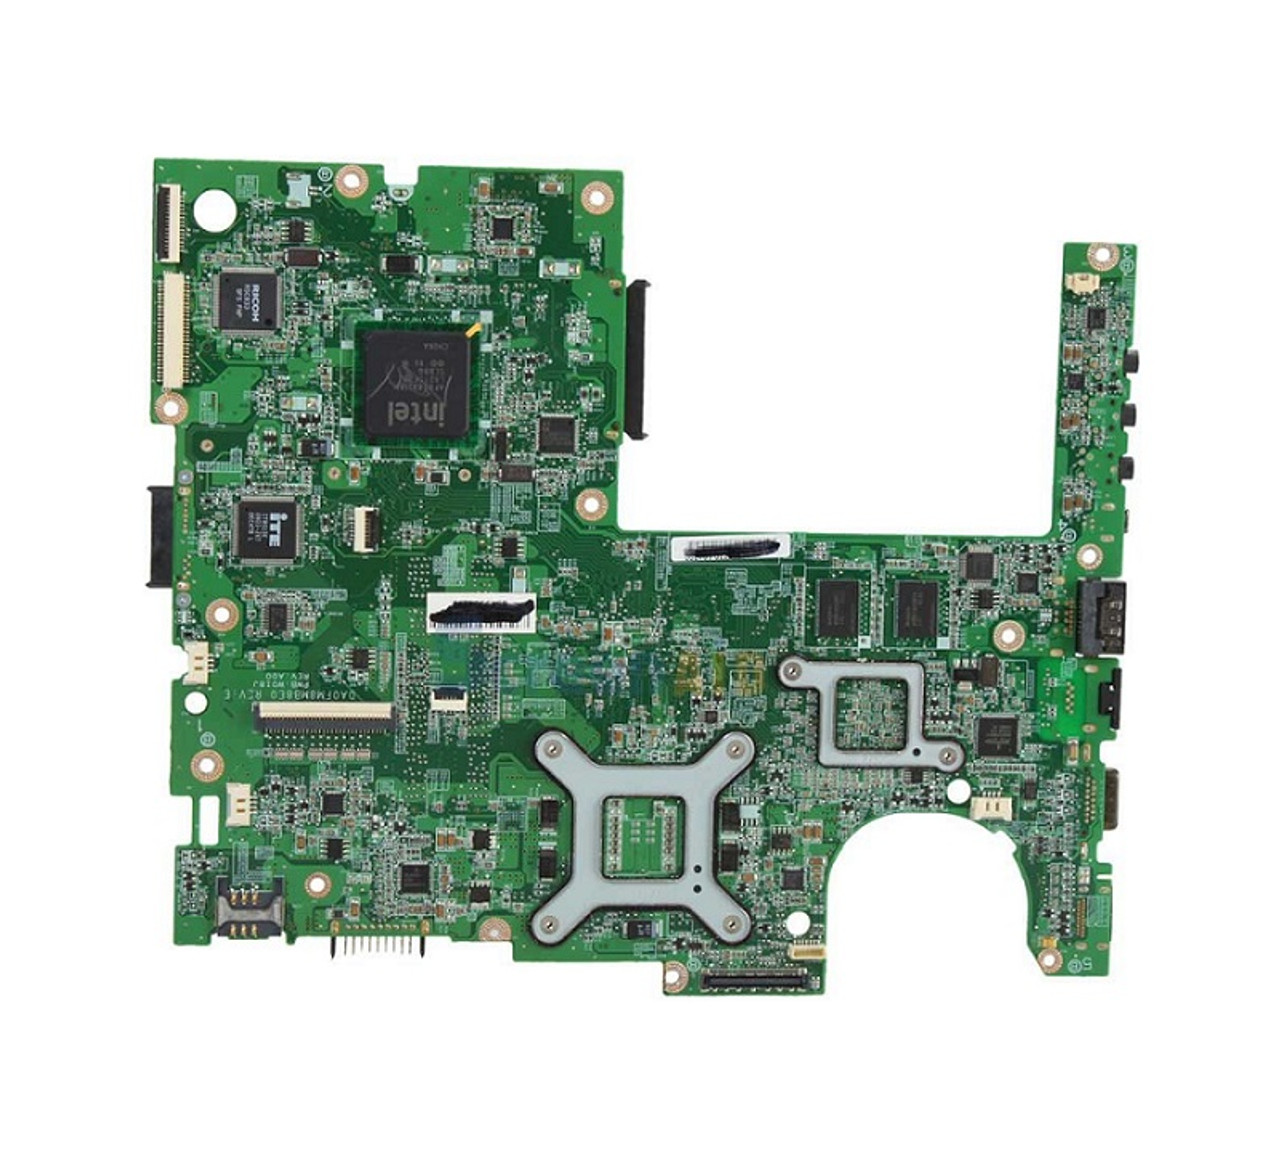 R45H1 - Dell System Board for Latitude E6500 Laptop